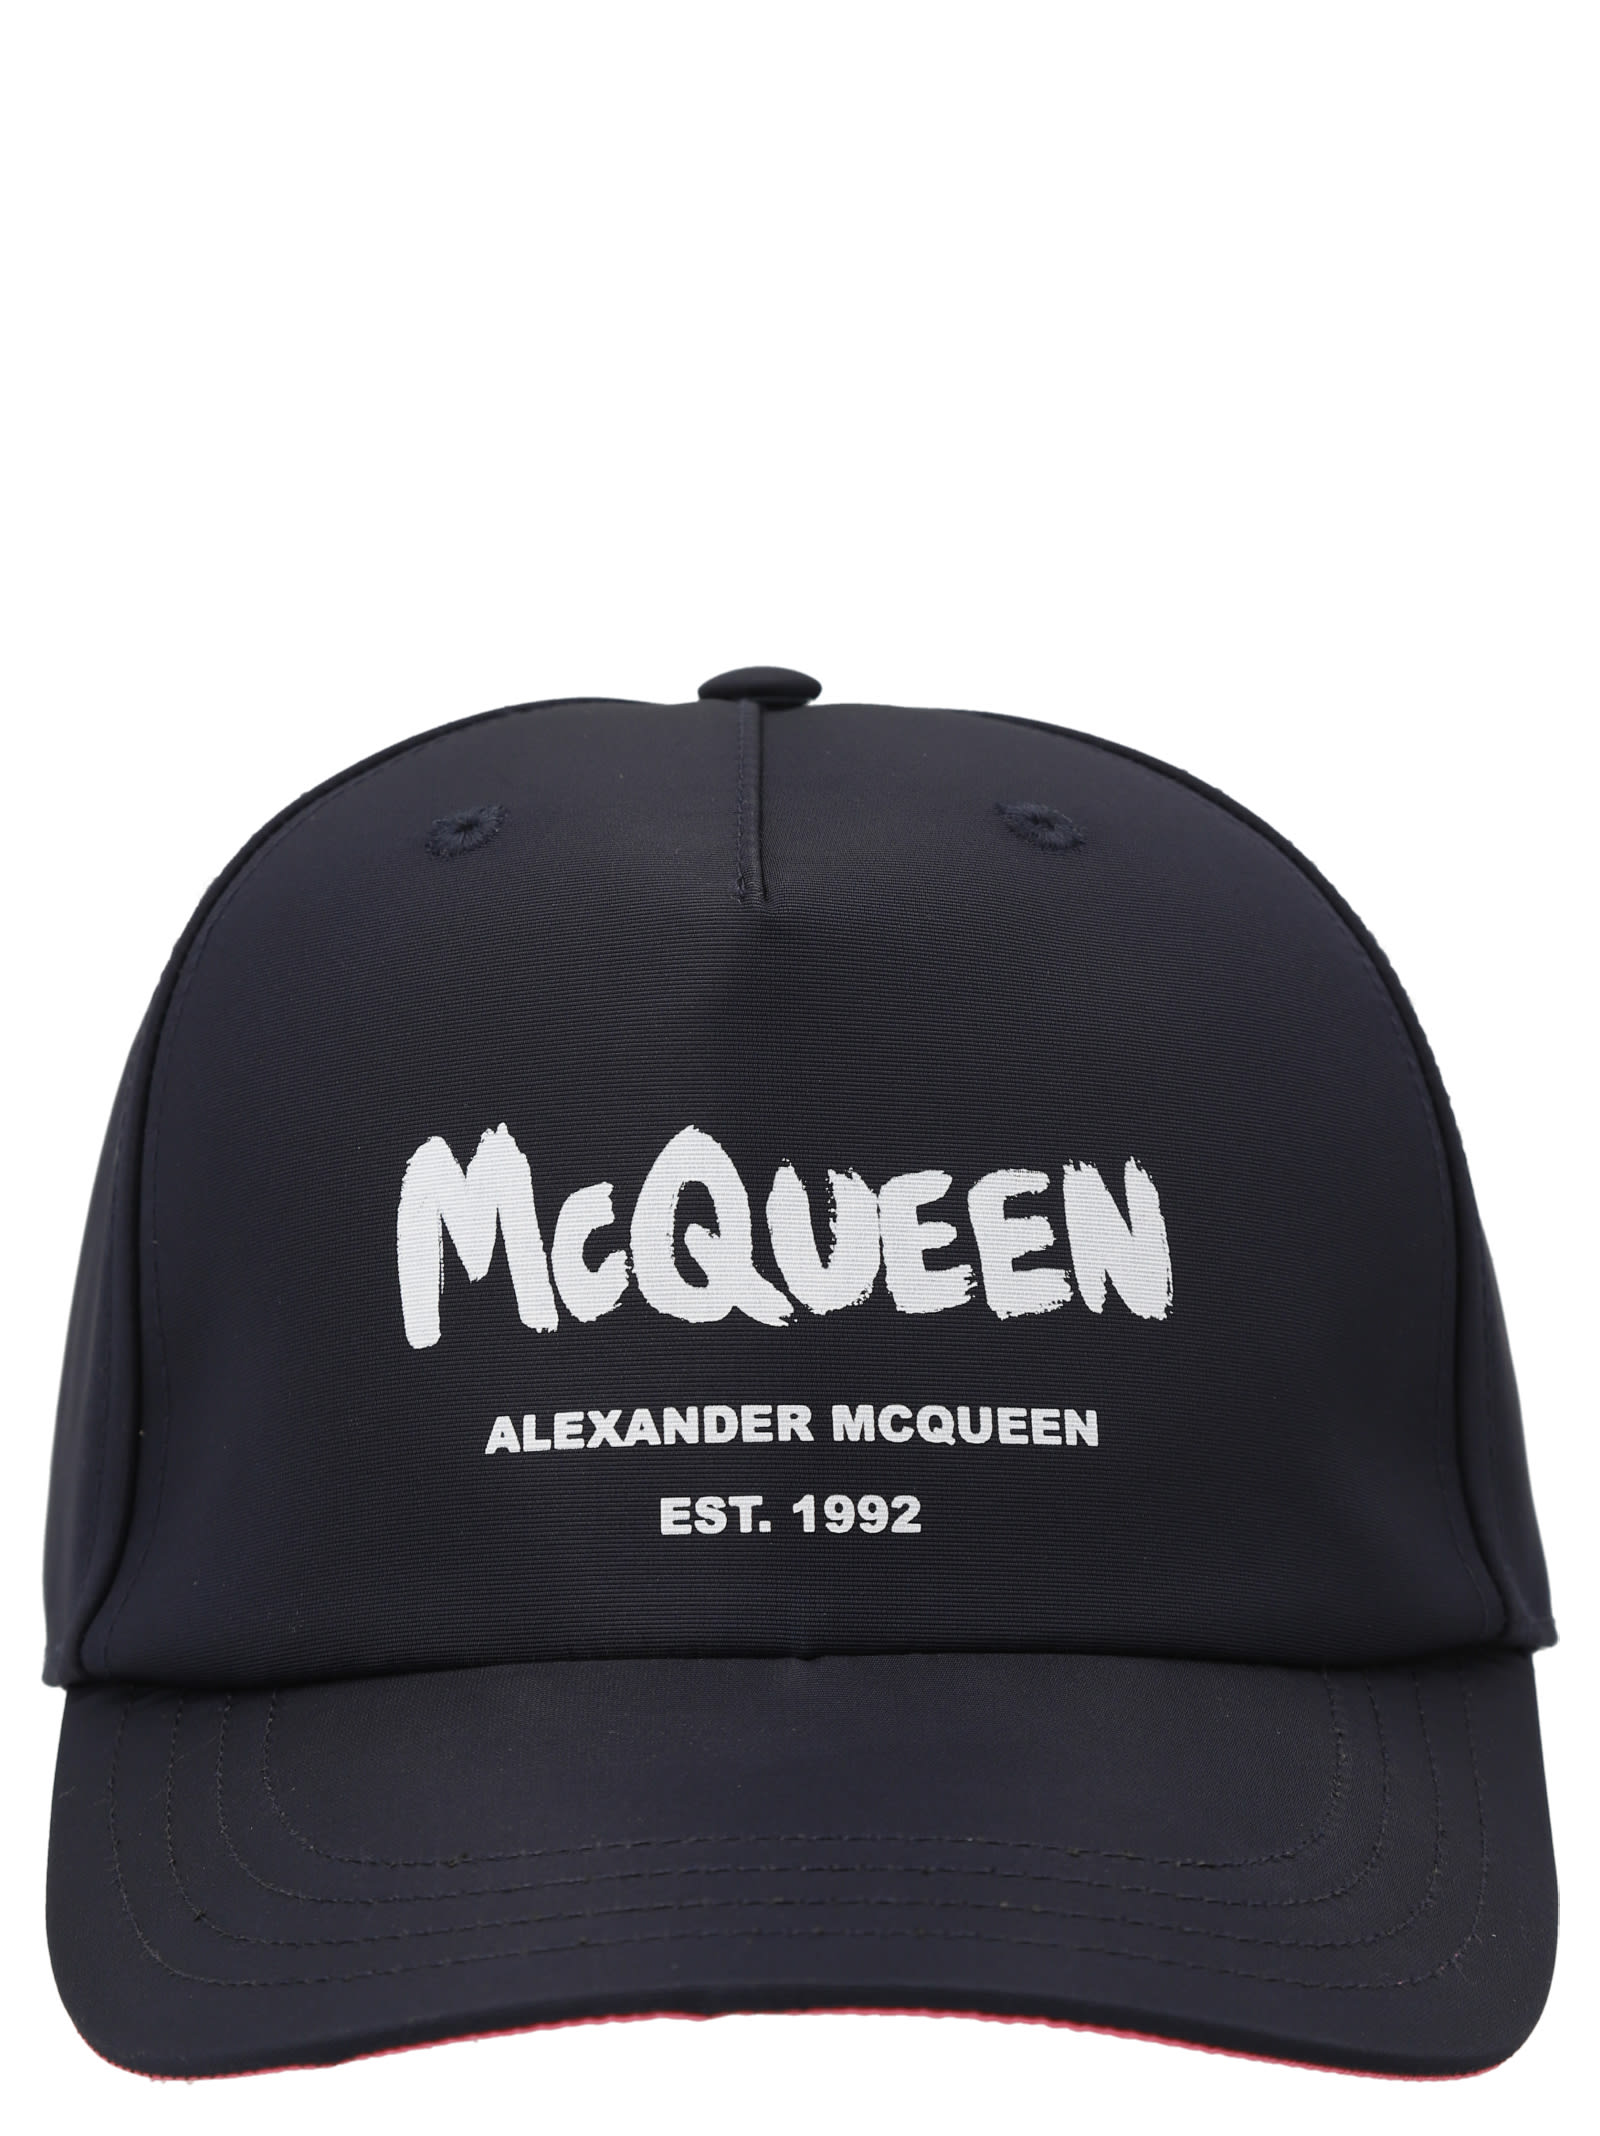 Alexander McQueen tonal Graffiti Cap